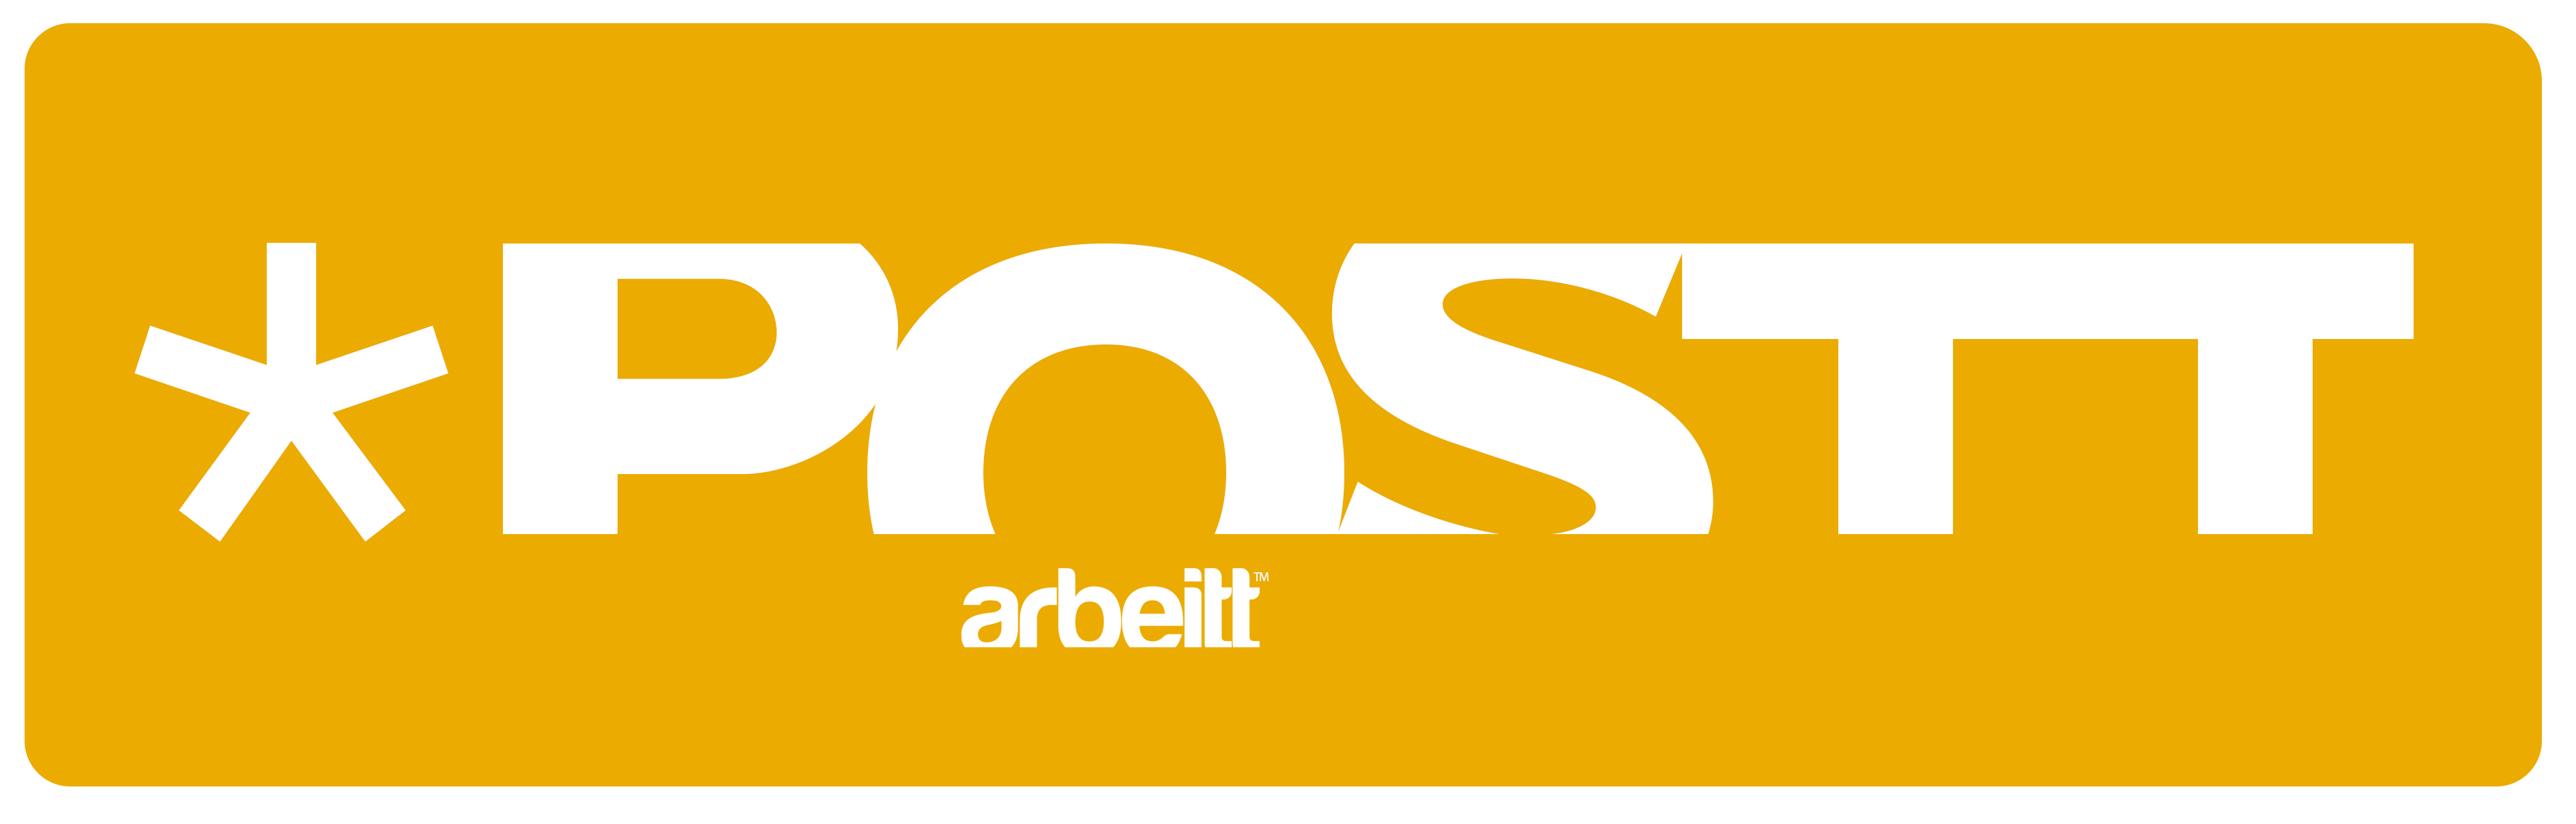 Revista POSTT by arbeitt